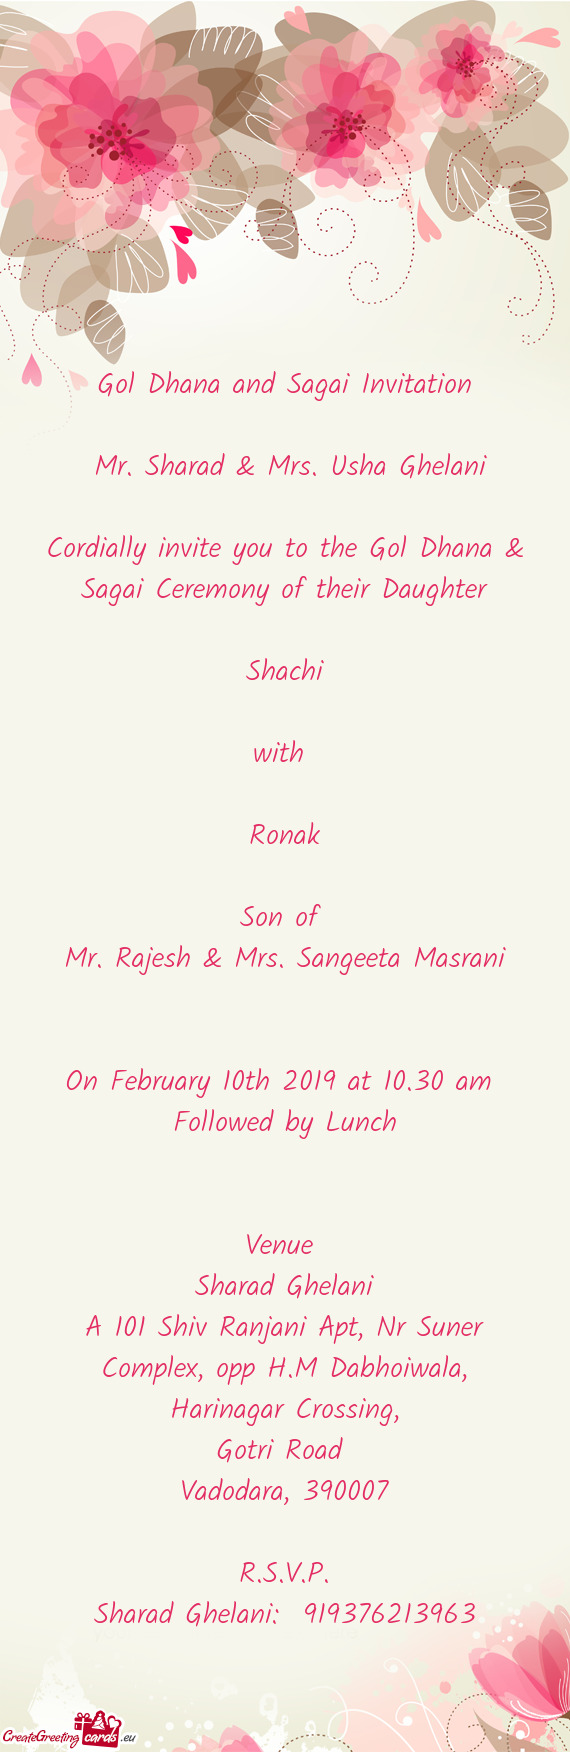 Gol Dhana and Sagai Invitation